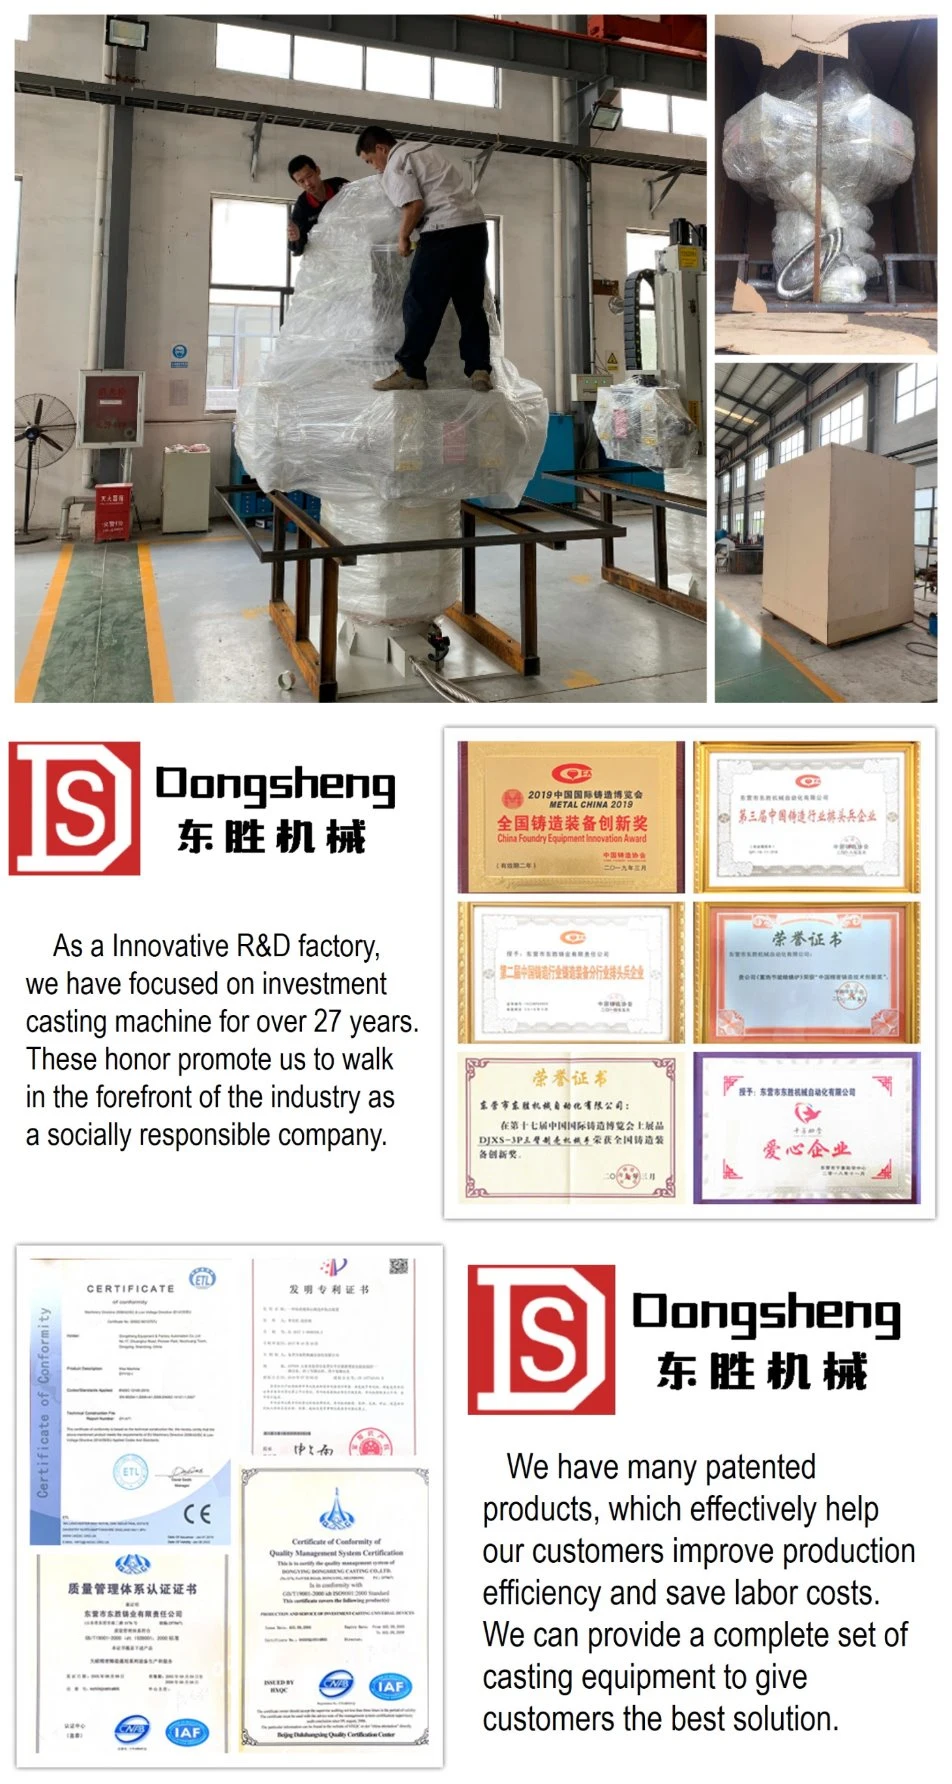 Công ty quản lý vỏ đúc đầu tư Dongsheng (ISO 9001)